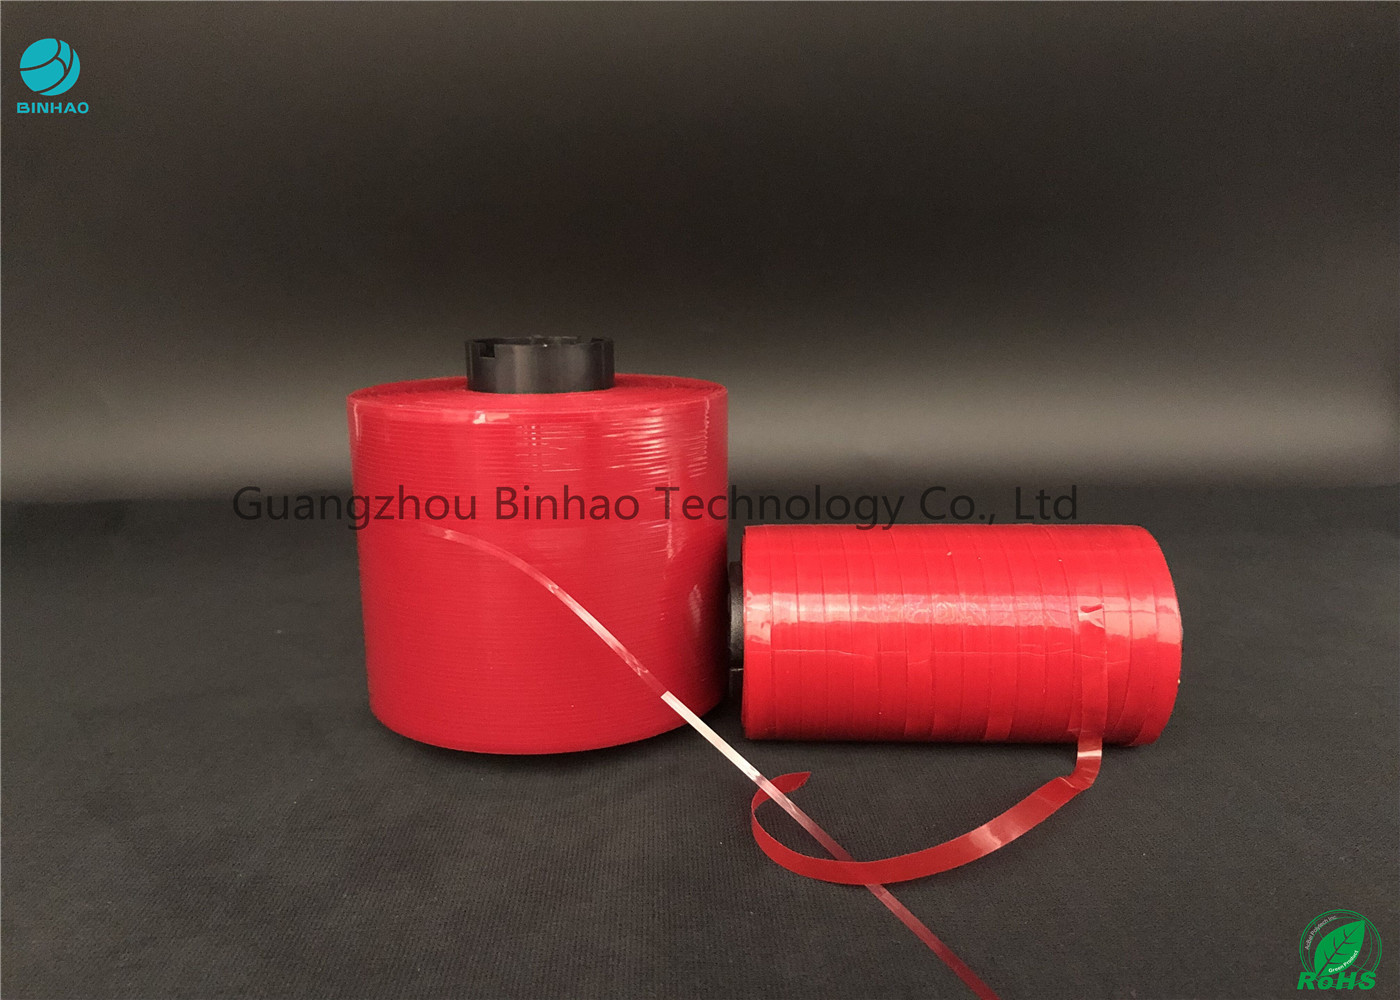 MOPP सामग्री स्व - चिपकने वाला चिपचिपा आंसू टेप आसान रंग लाल 5 मिमी चौड़ाई दफ़्ती बॉक्स के लिए